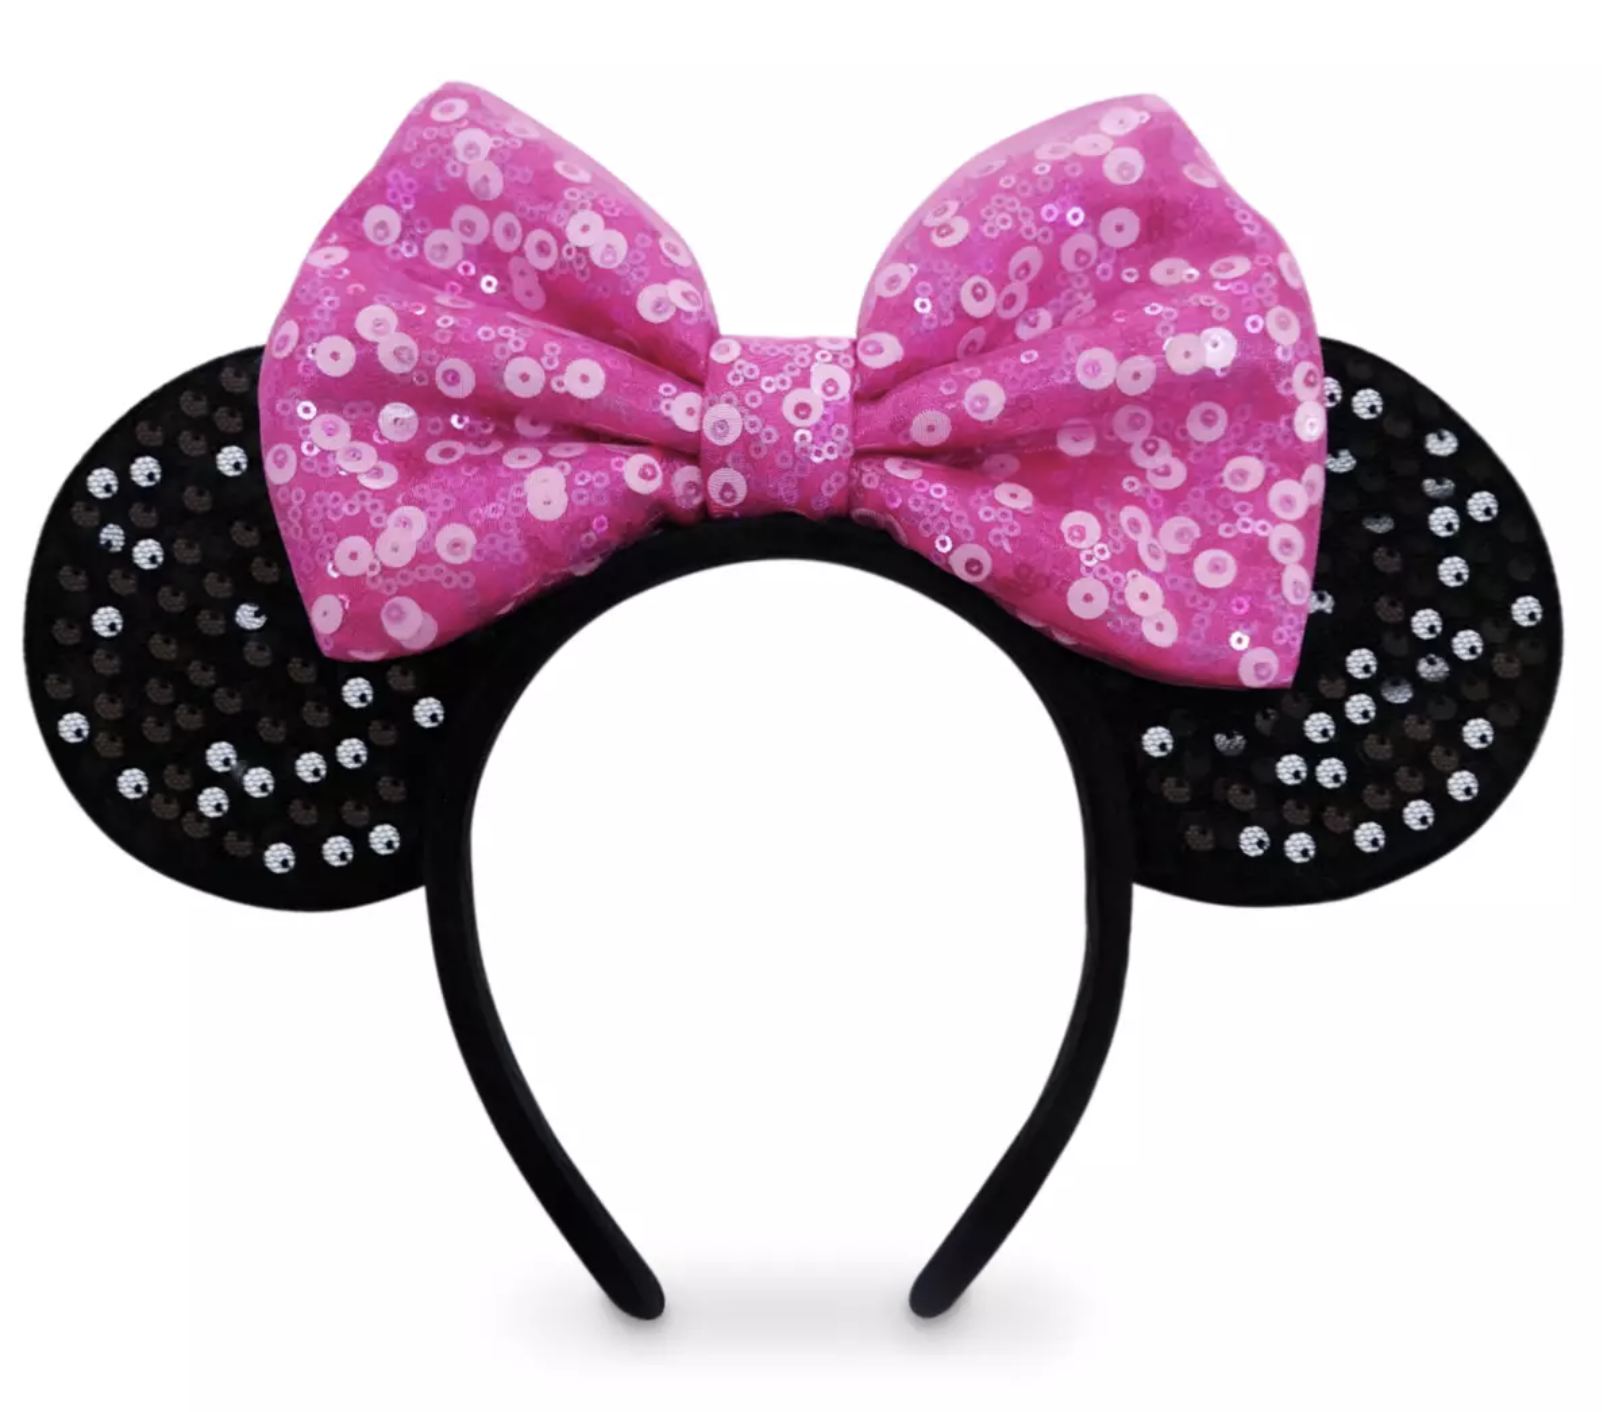 Minnie Mouse ears with a bow on a headband